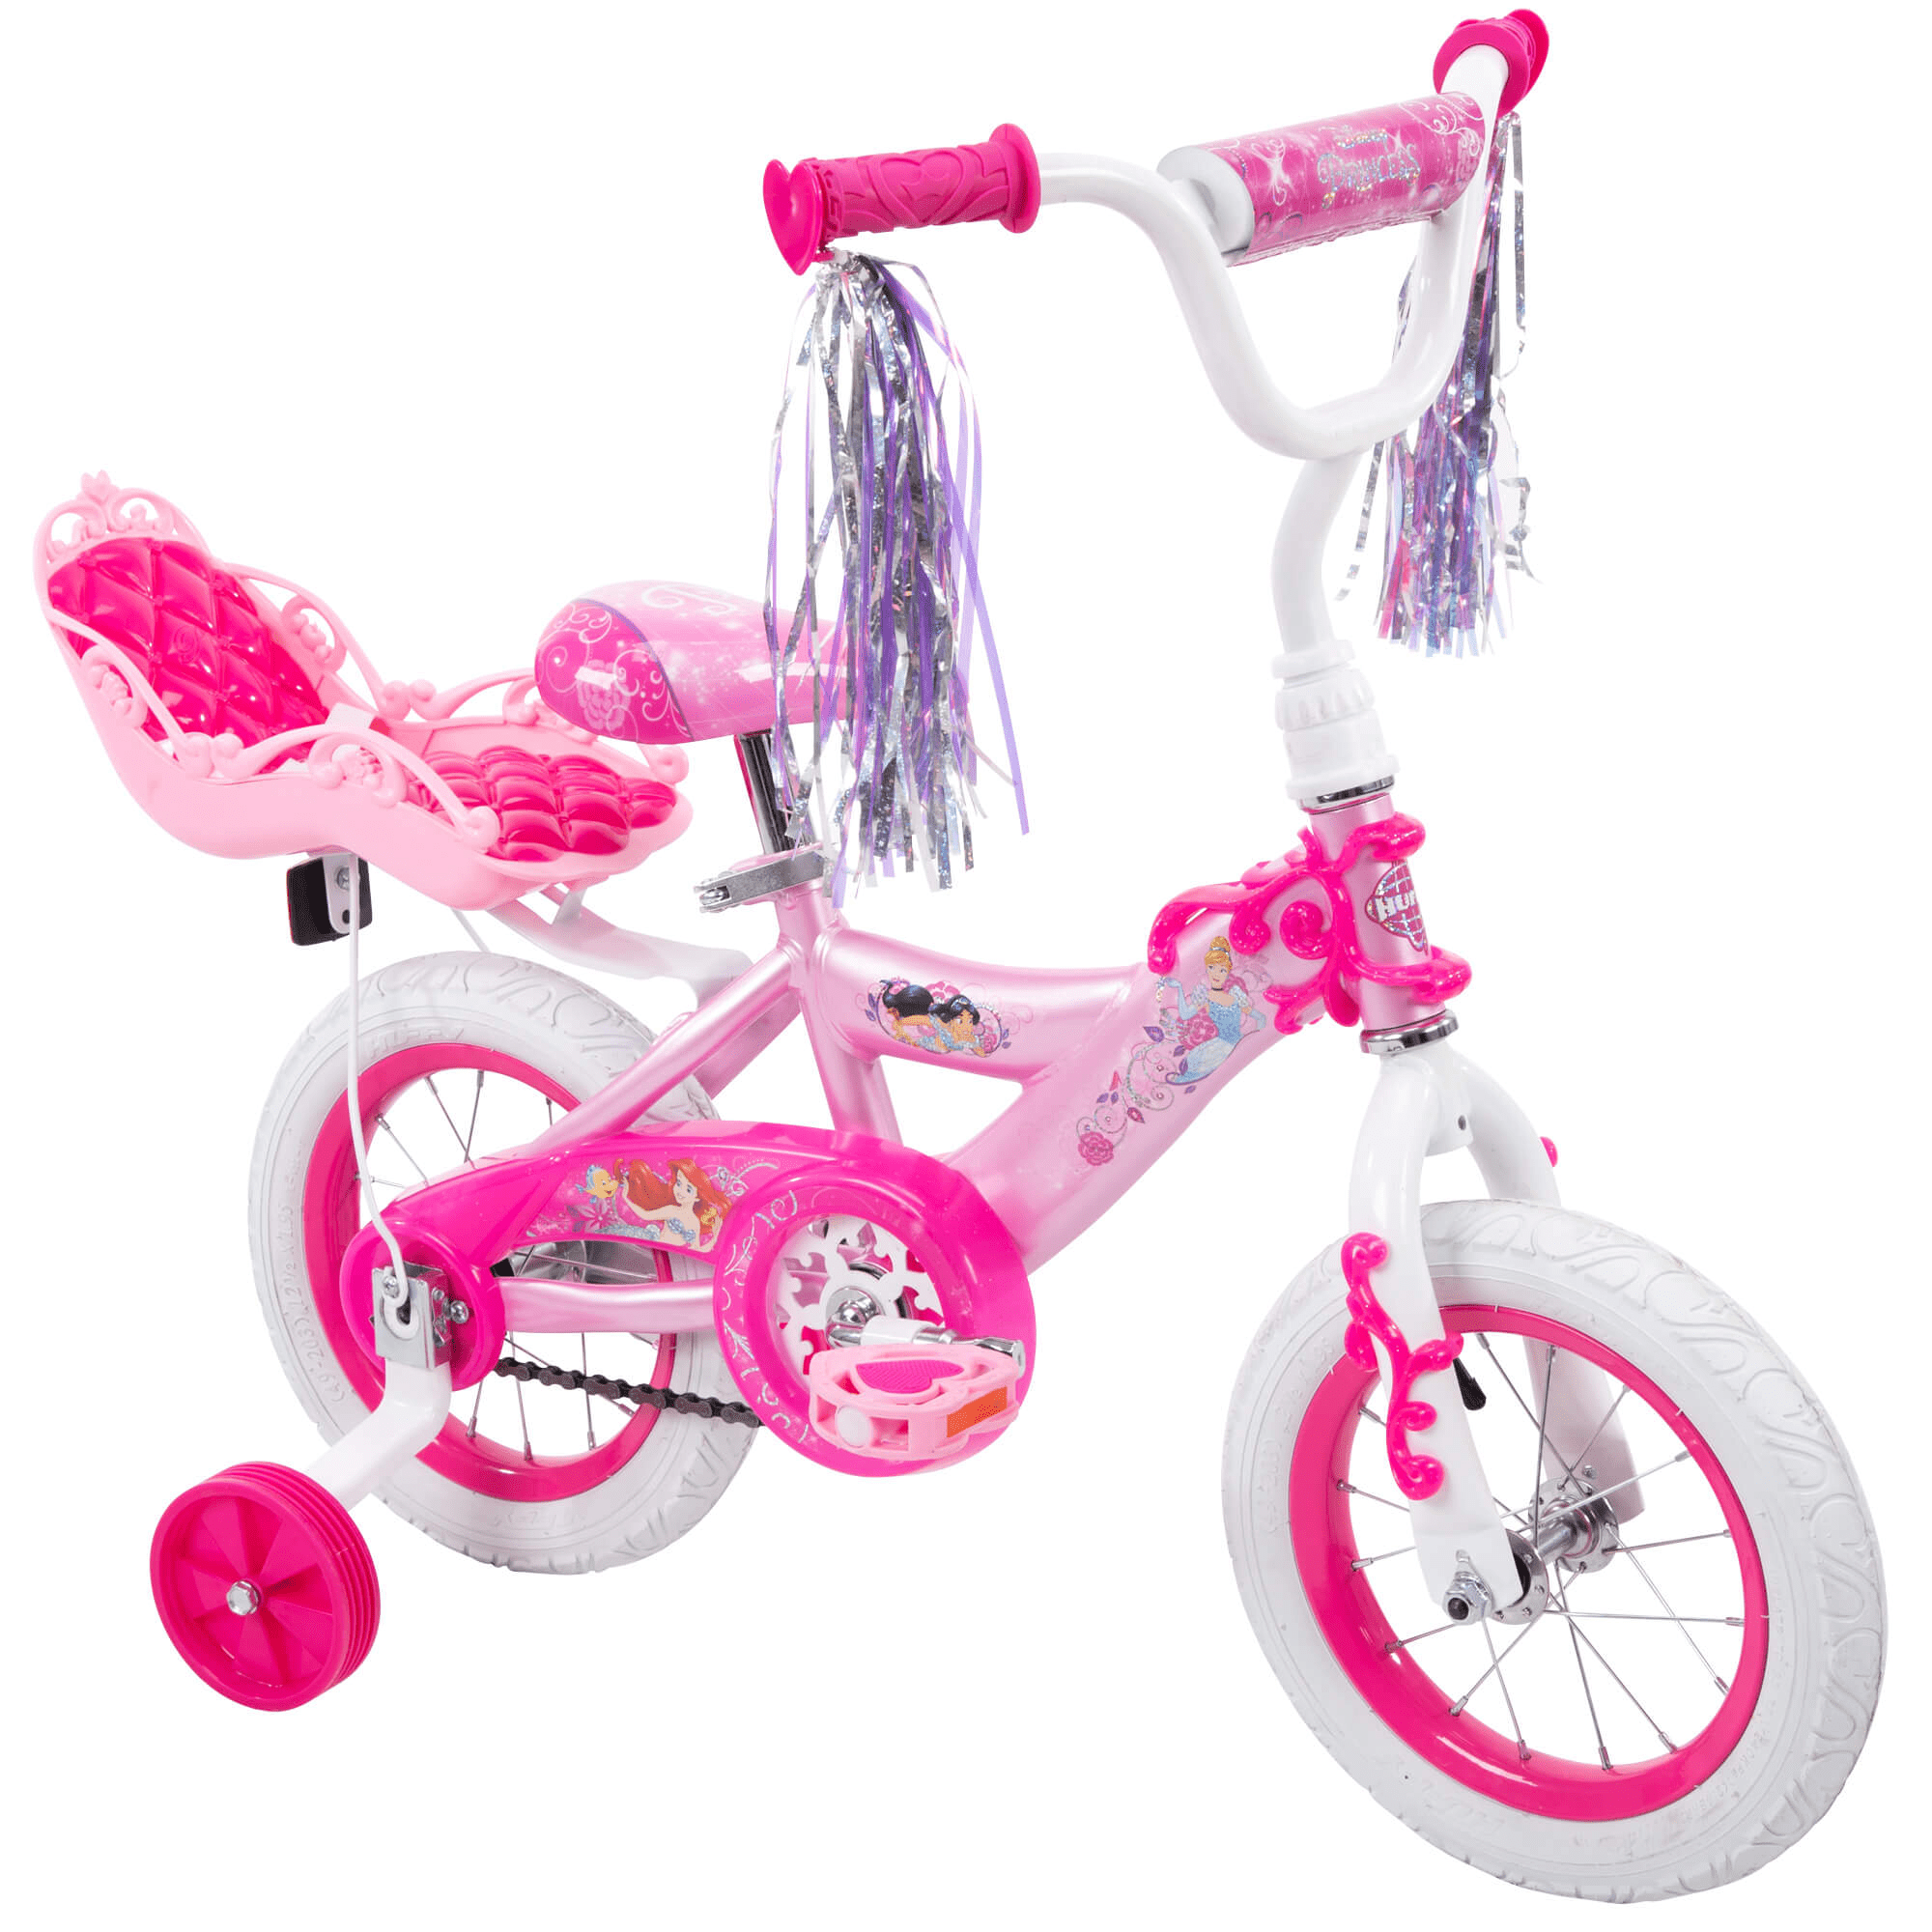 Top case bike child girl pink universal trunk door doll bebe doll doudou 